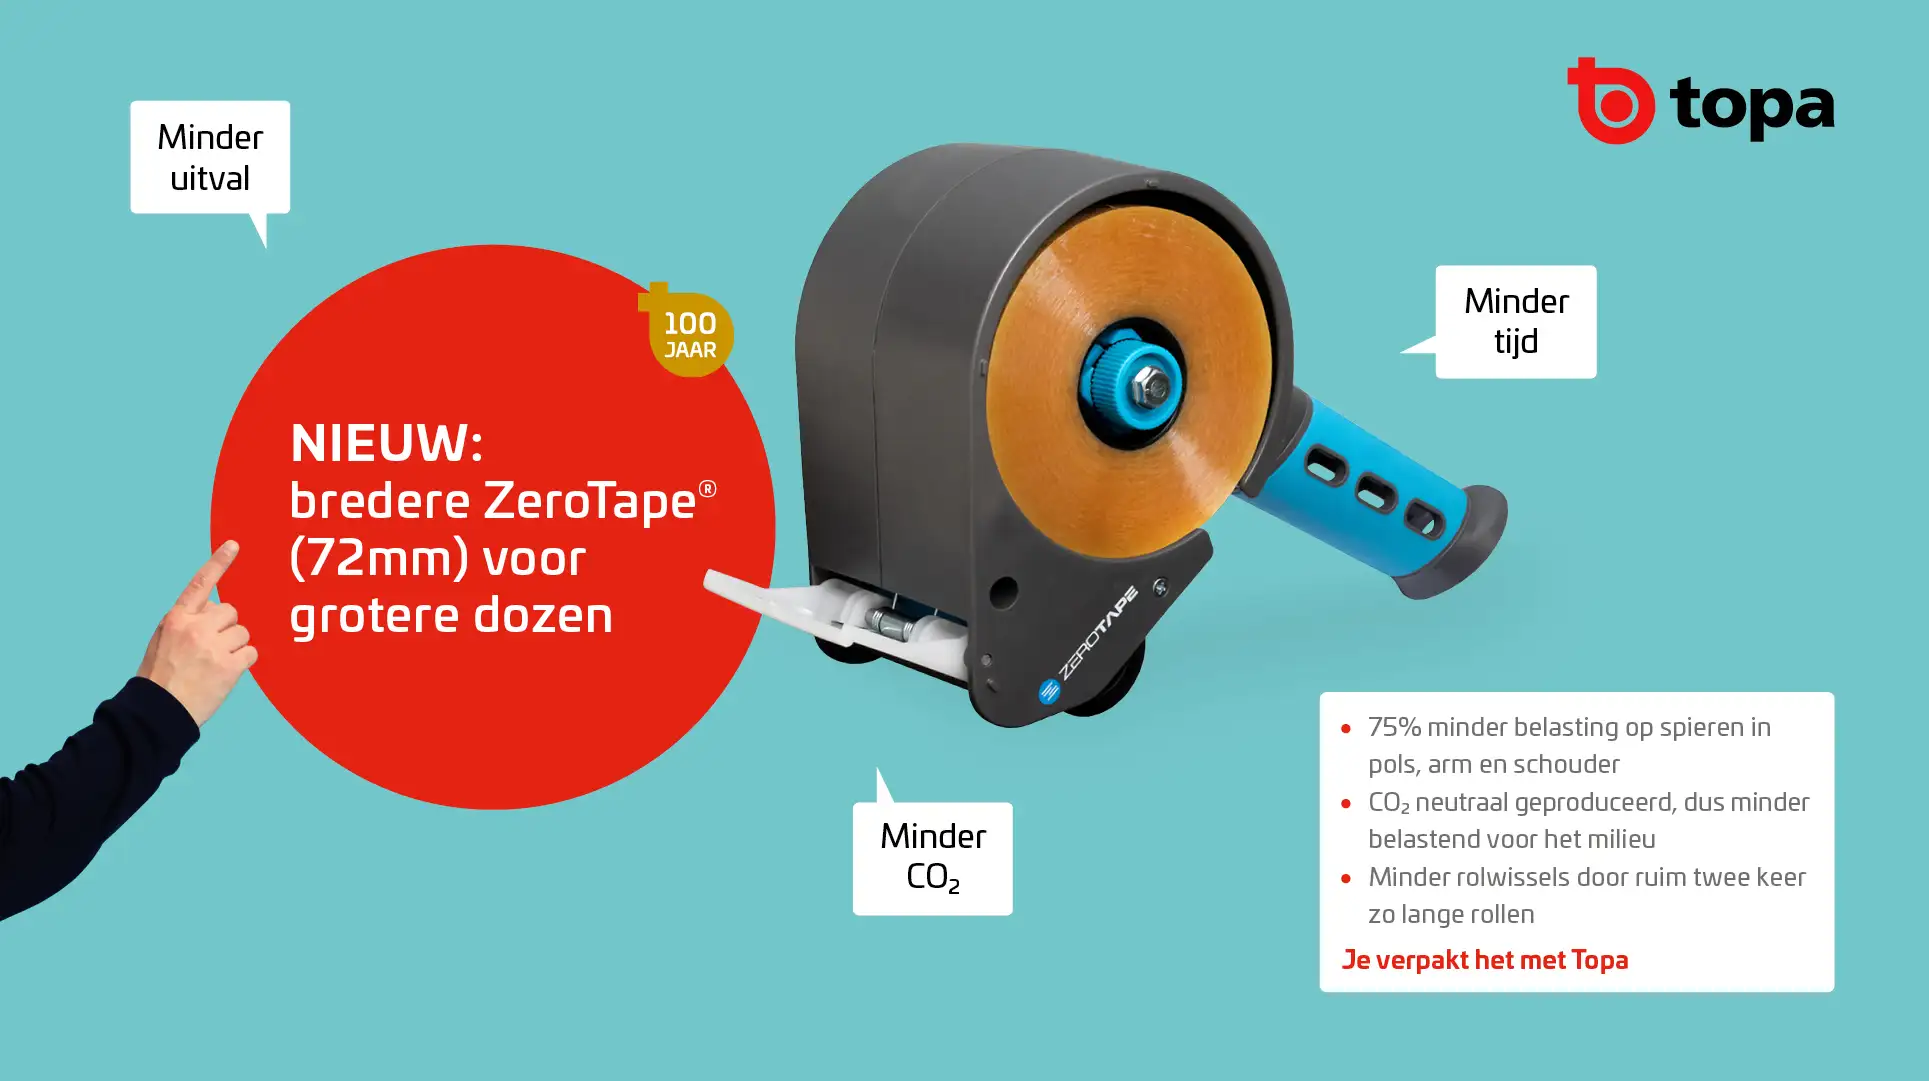 Topa introduceert de ZeroTape dispenser voor grotere dozen.